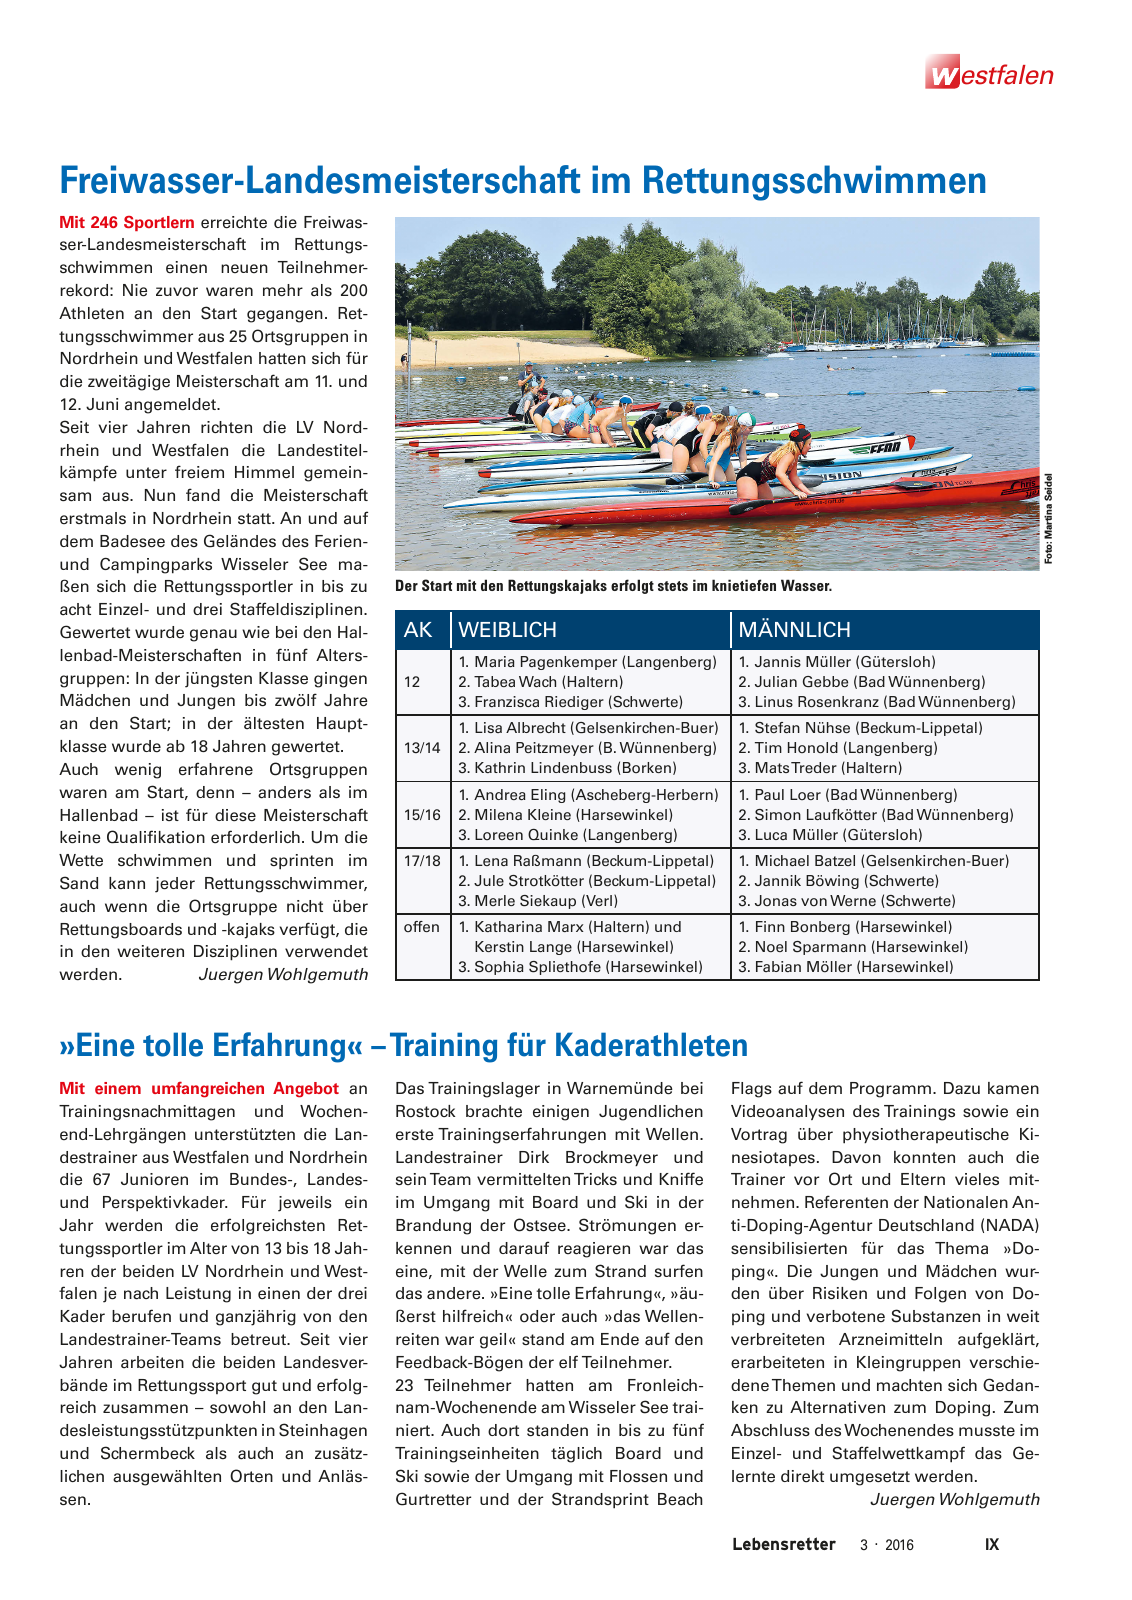 Vorschau Lebensretter 3/2016 - Regionalausgabe Westfalen Seite 11